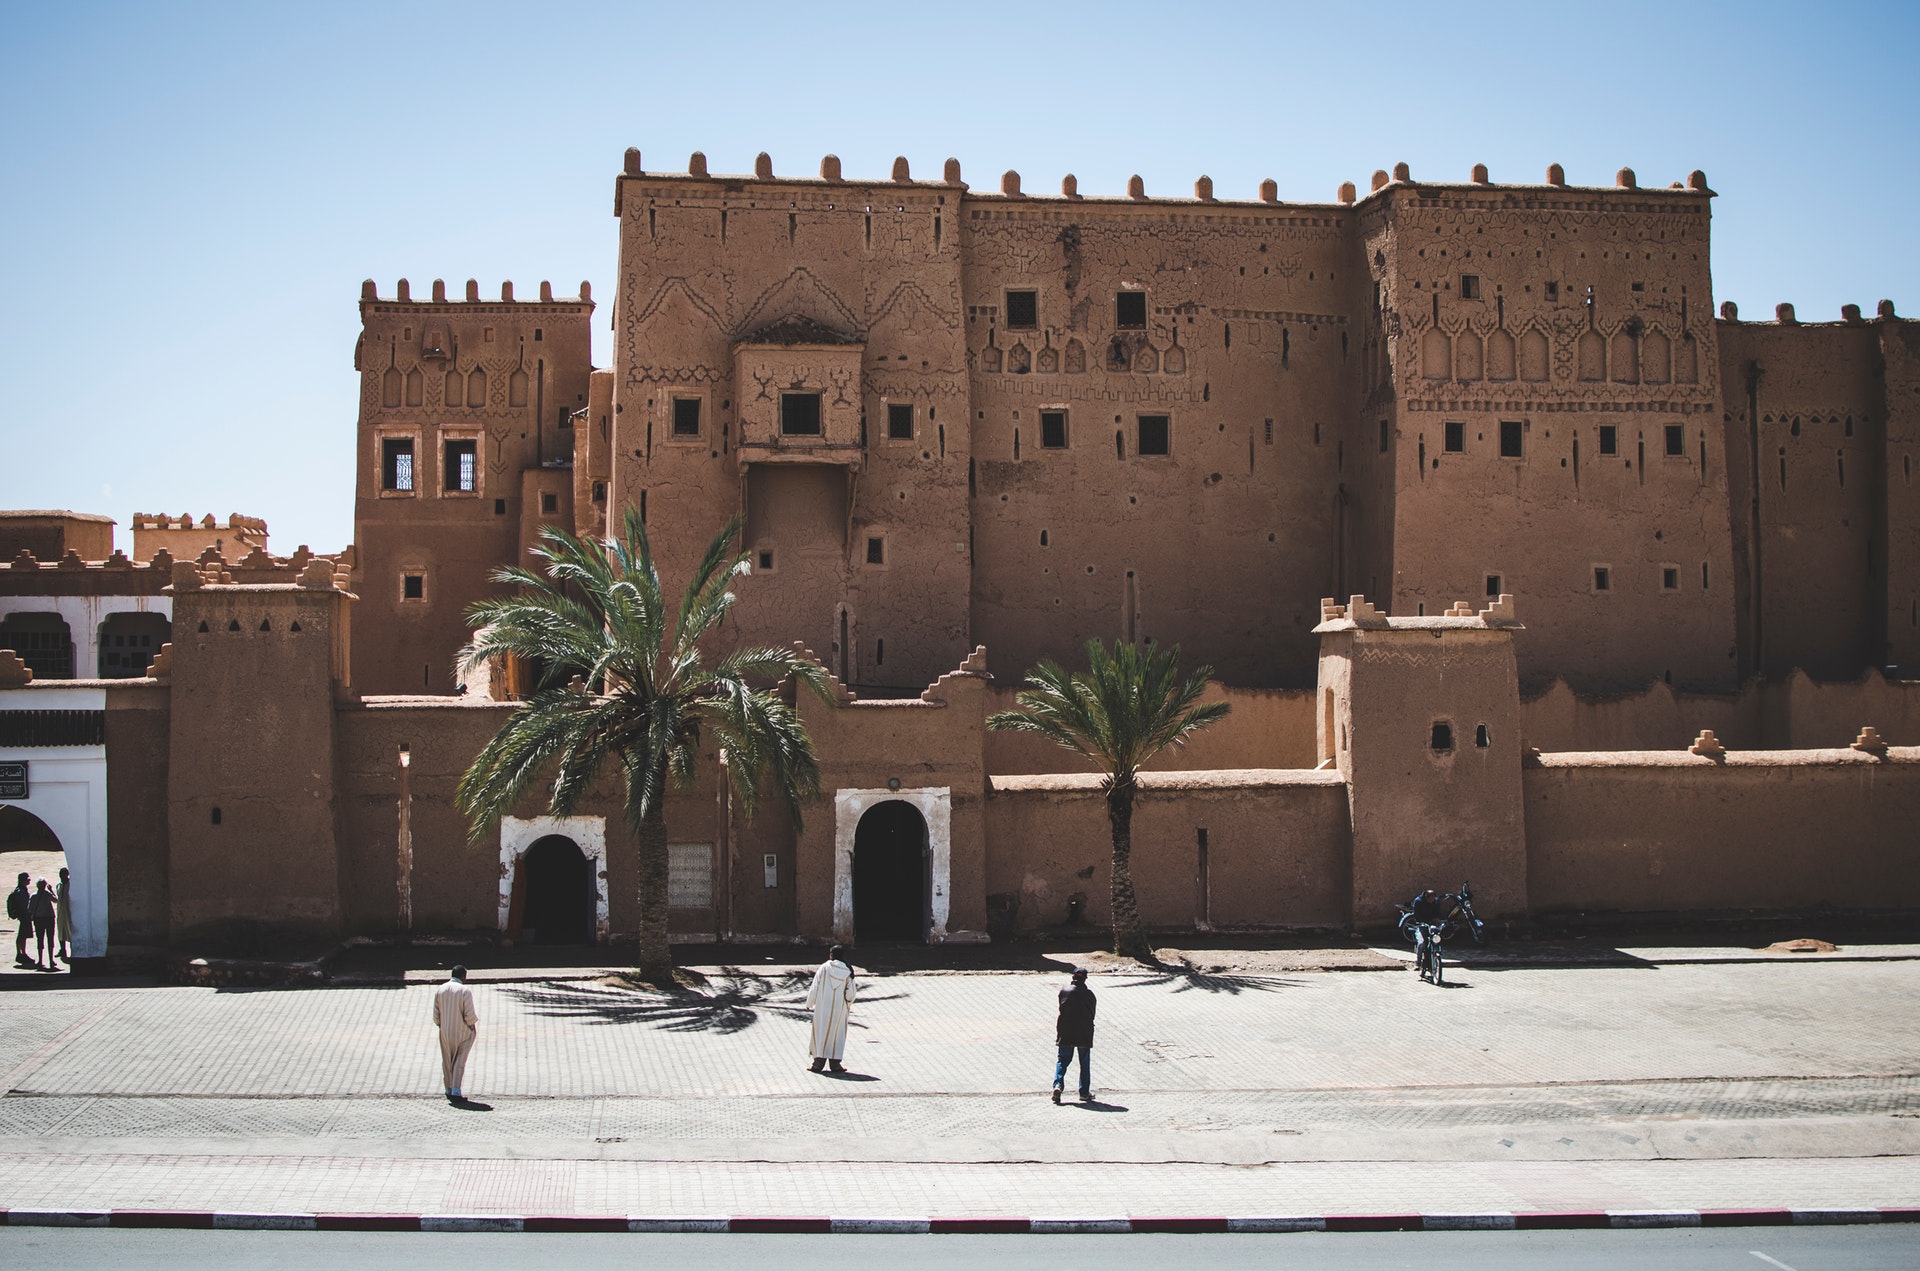 marrakech desert tour 2 days